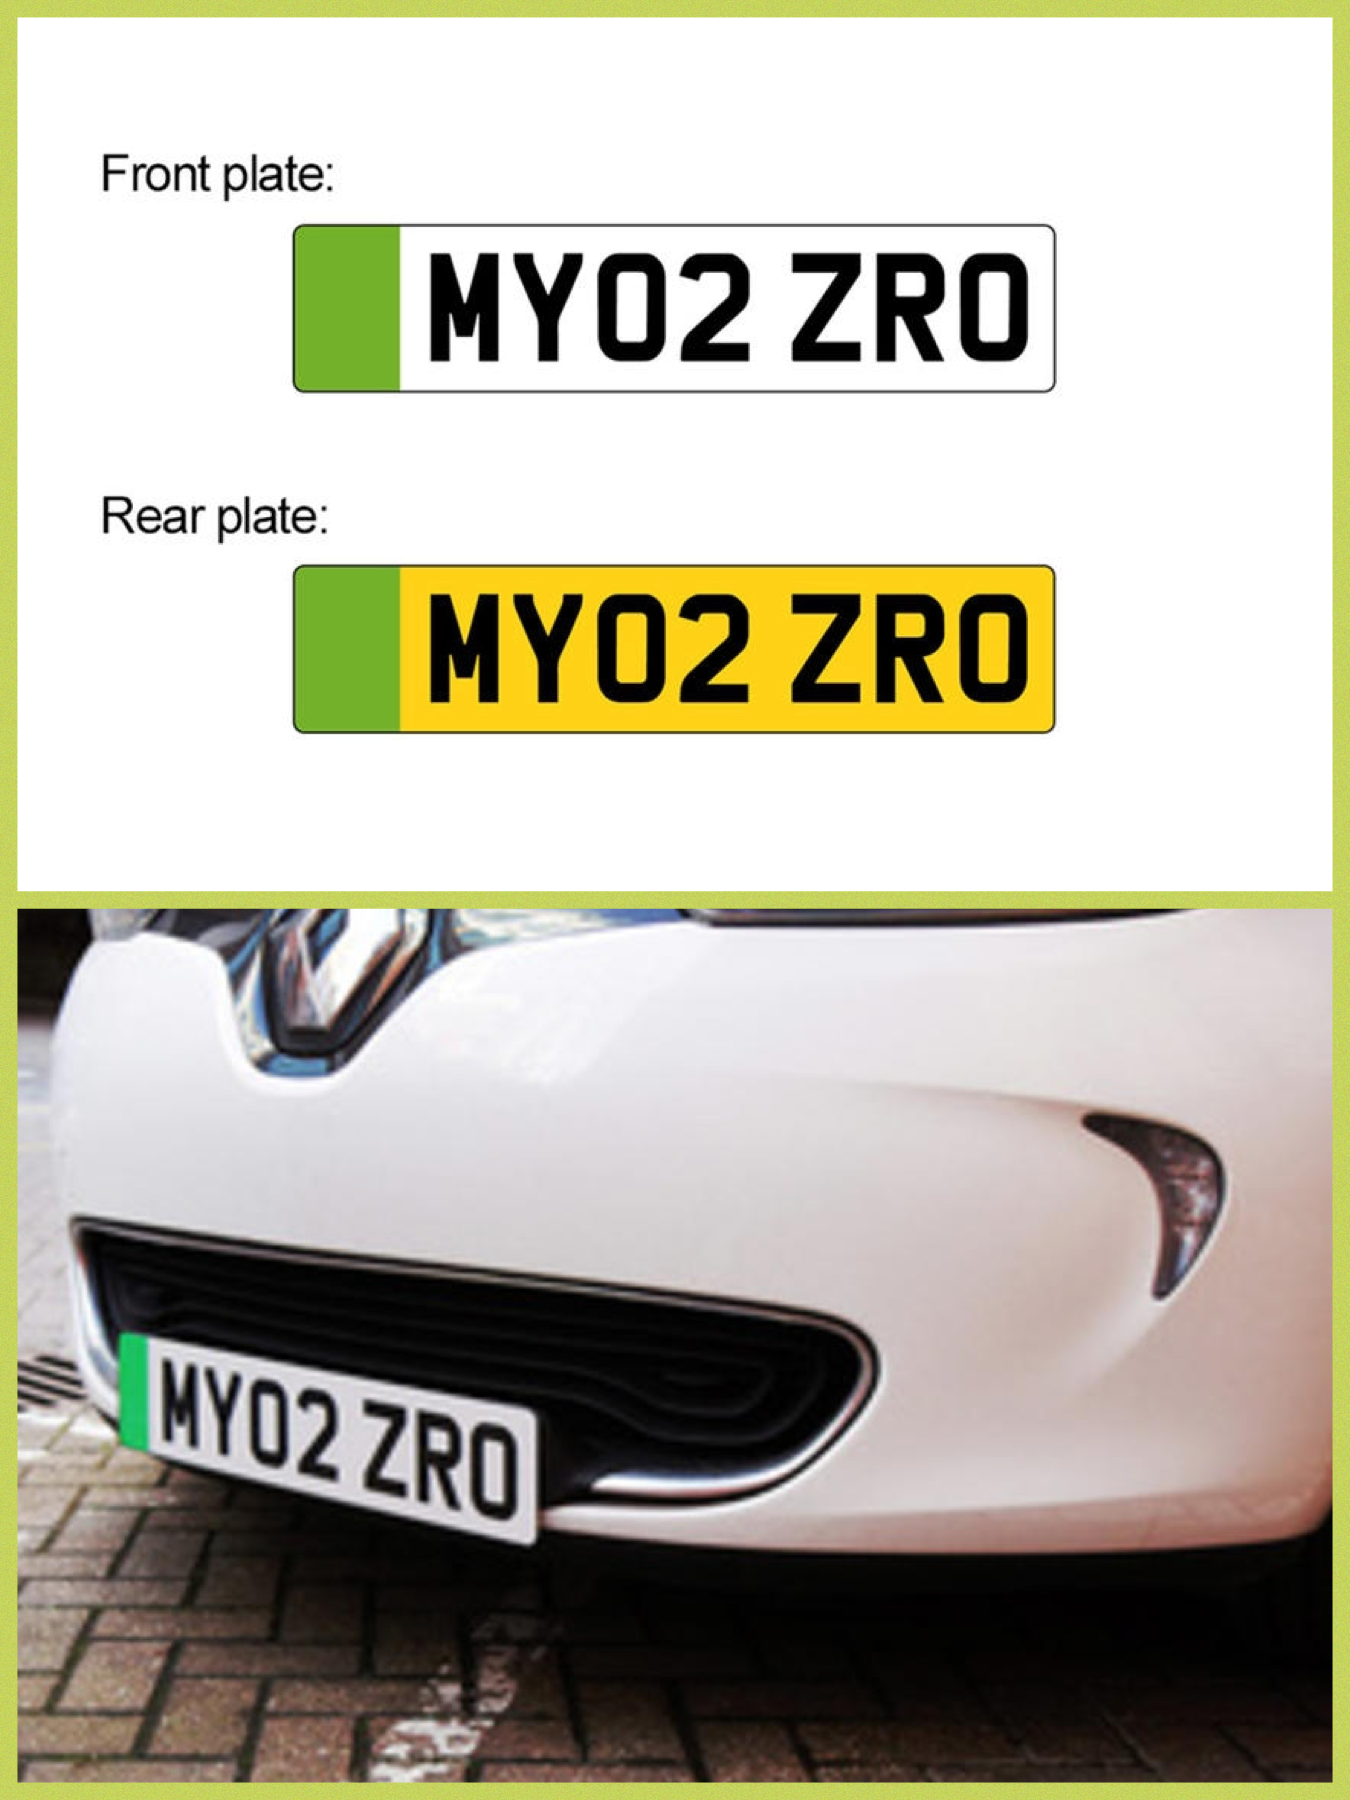 Phev ブログ 英国のゼロエミッション車用 グリーンのマーク付きナンバープレート とは